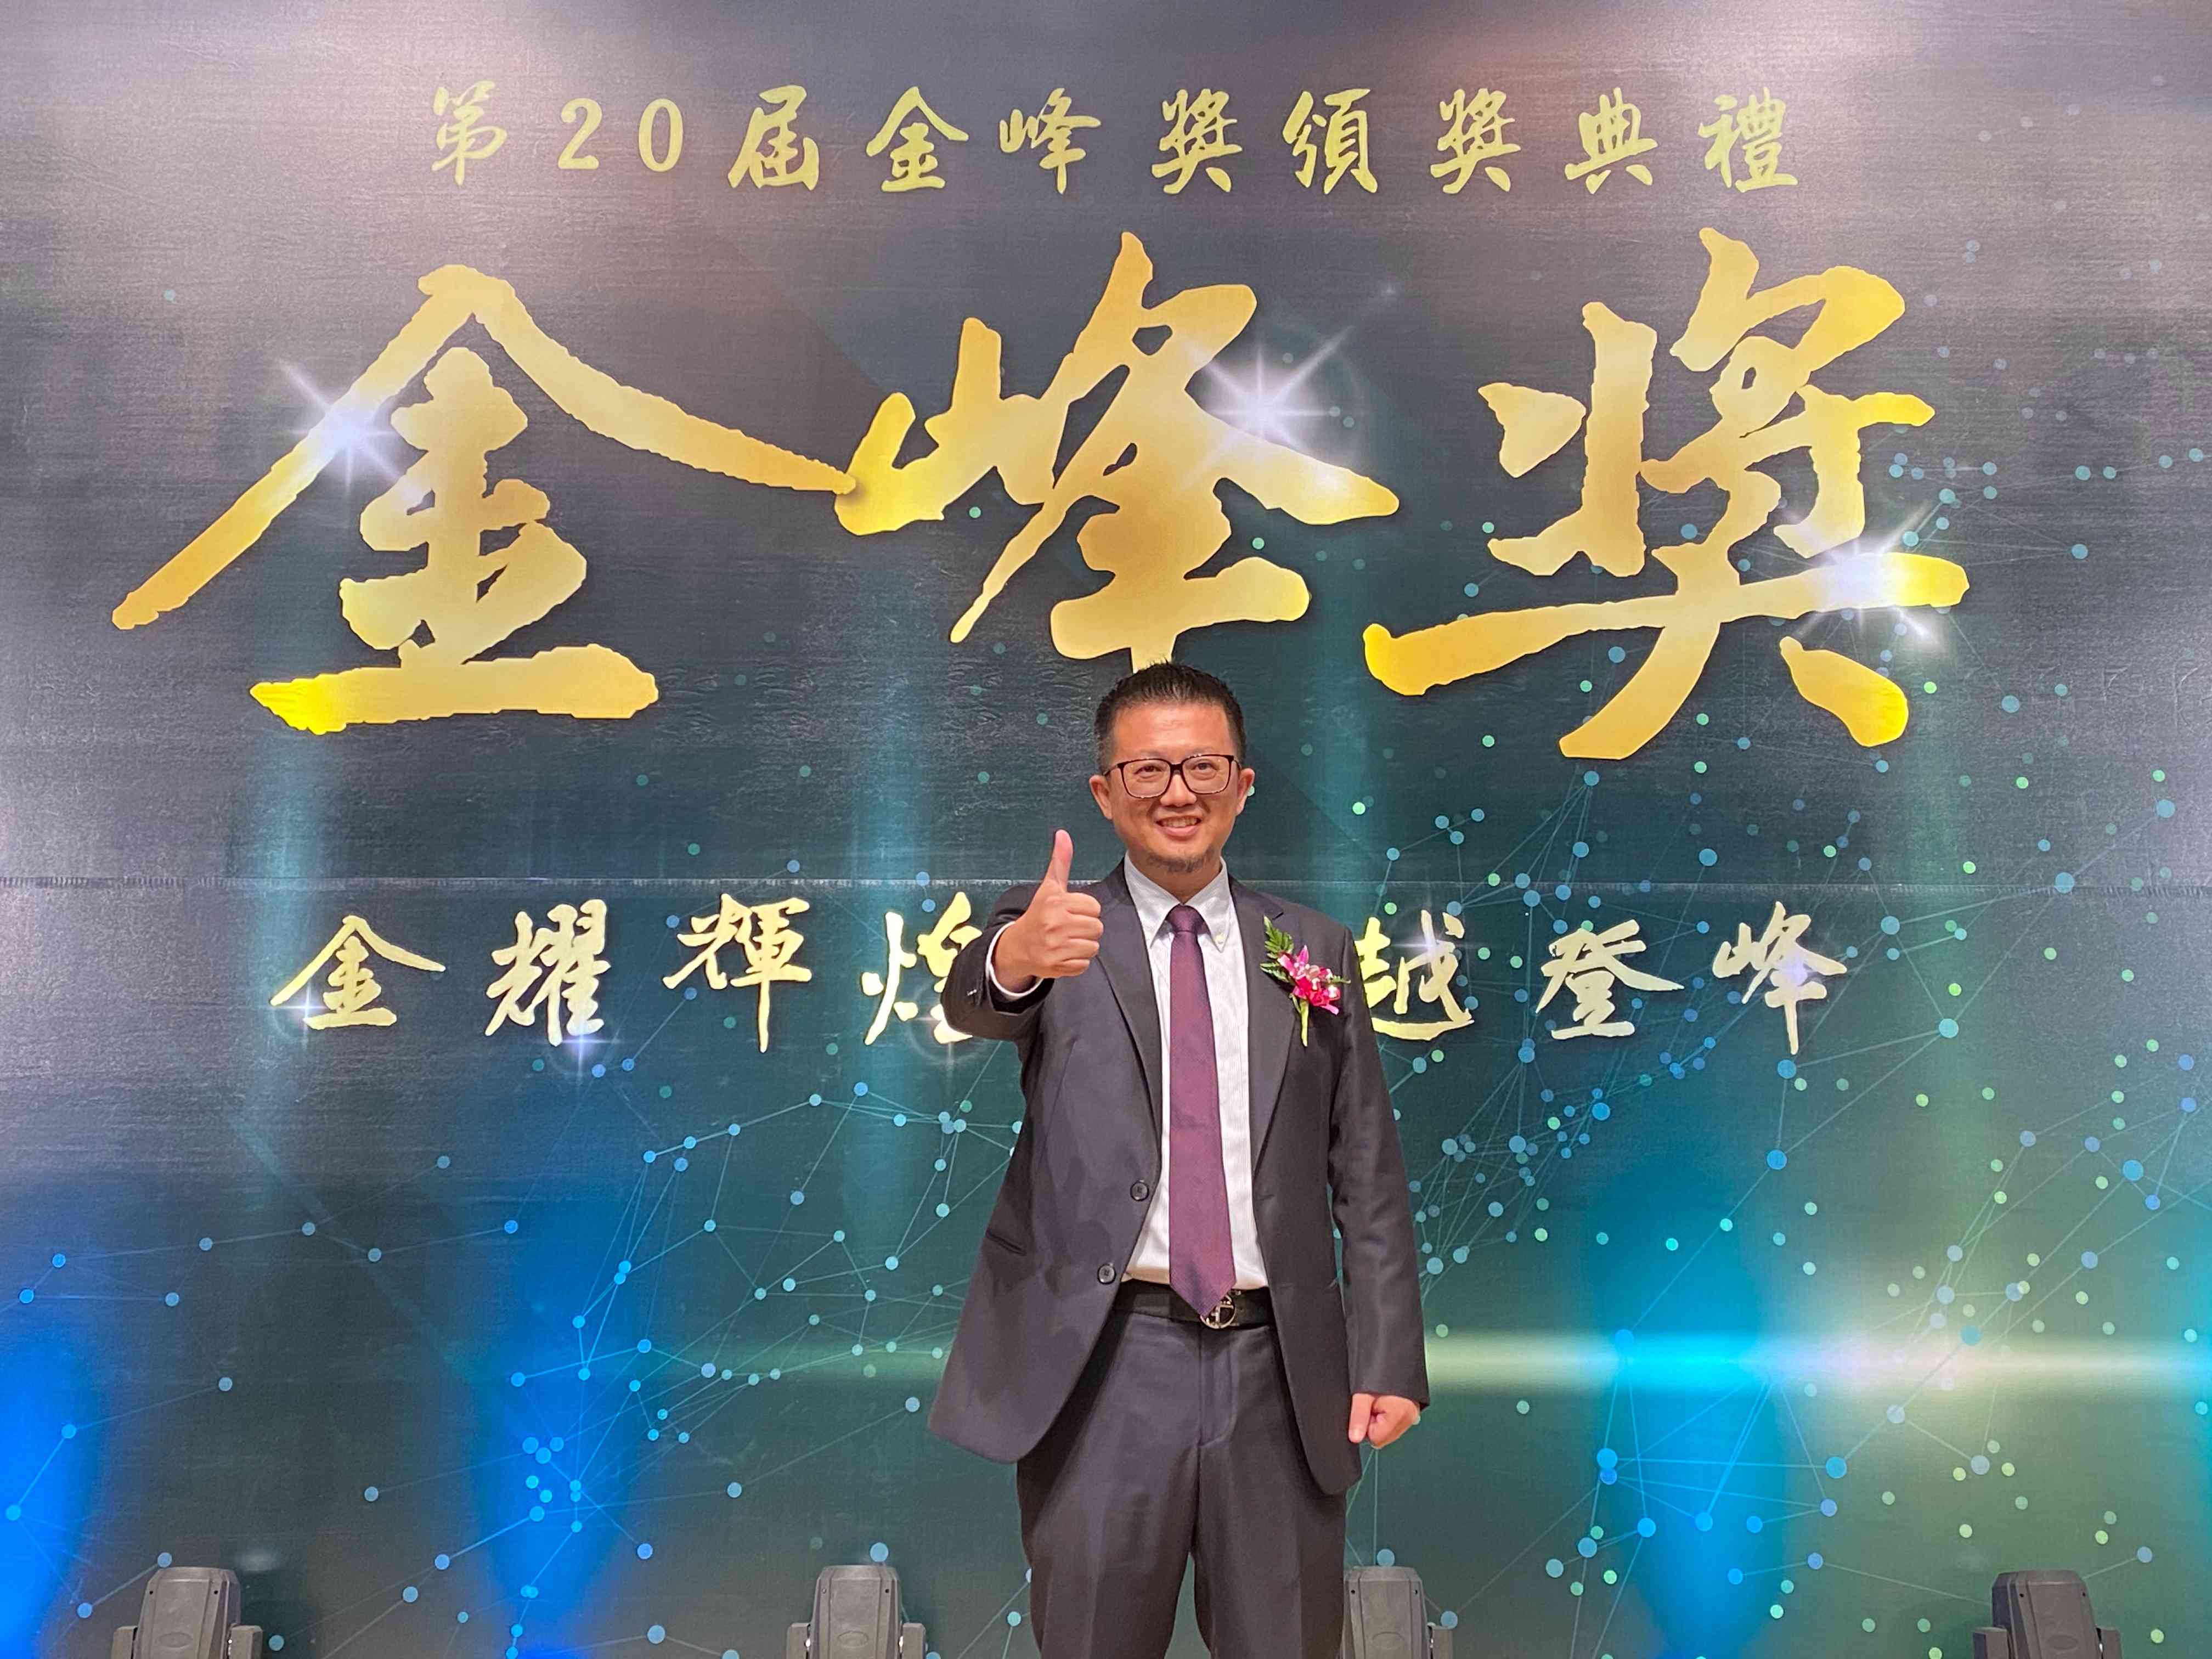 新加坡商鈦坦科技總經理 李境展 榮獲金鋒獎「十大傑出企業」殊榮